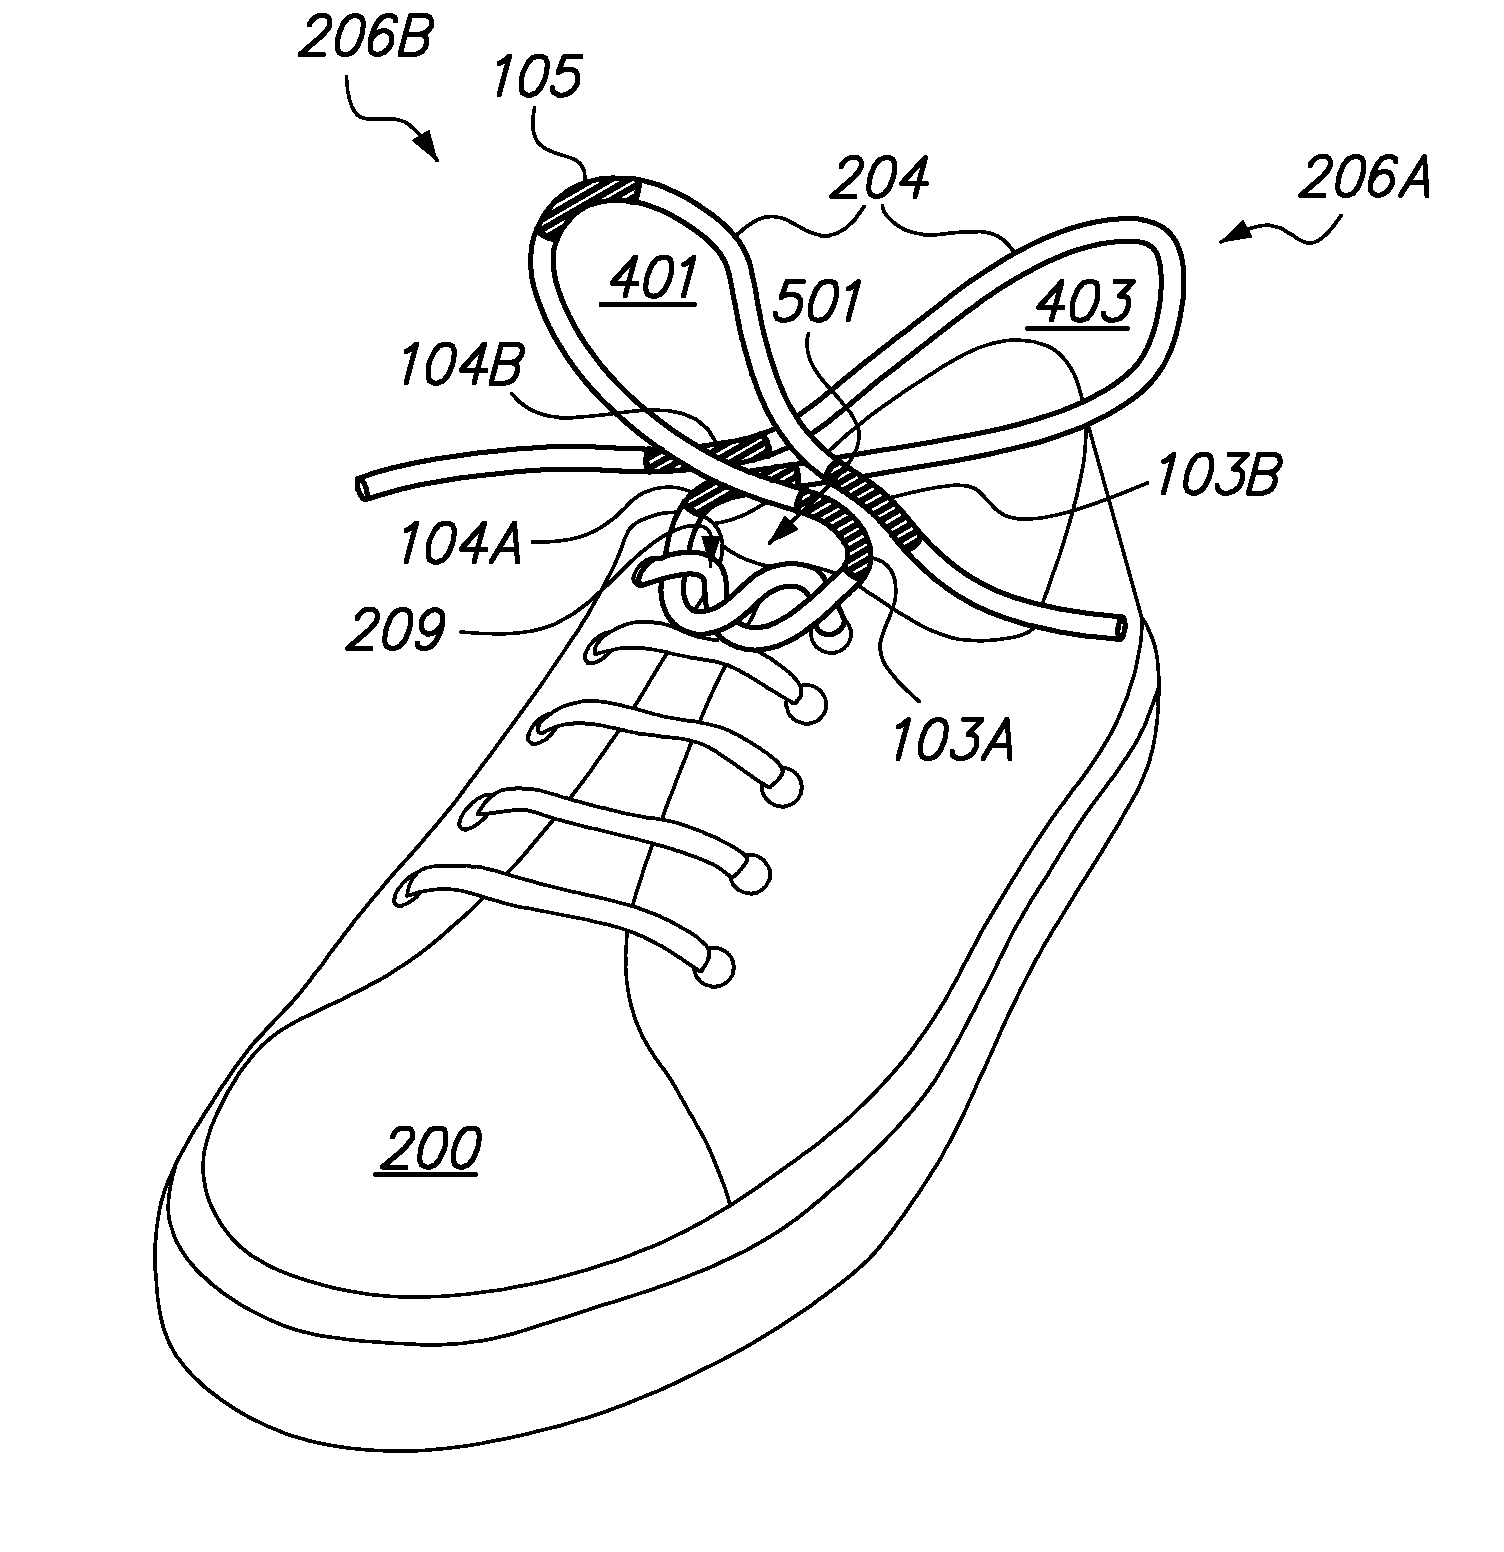 Instructional shoelace tying system